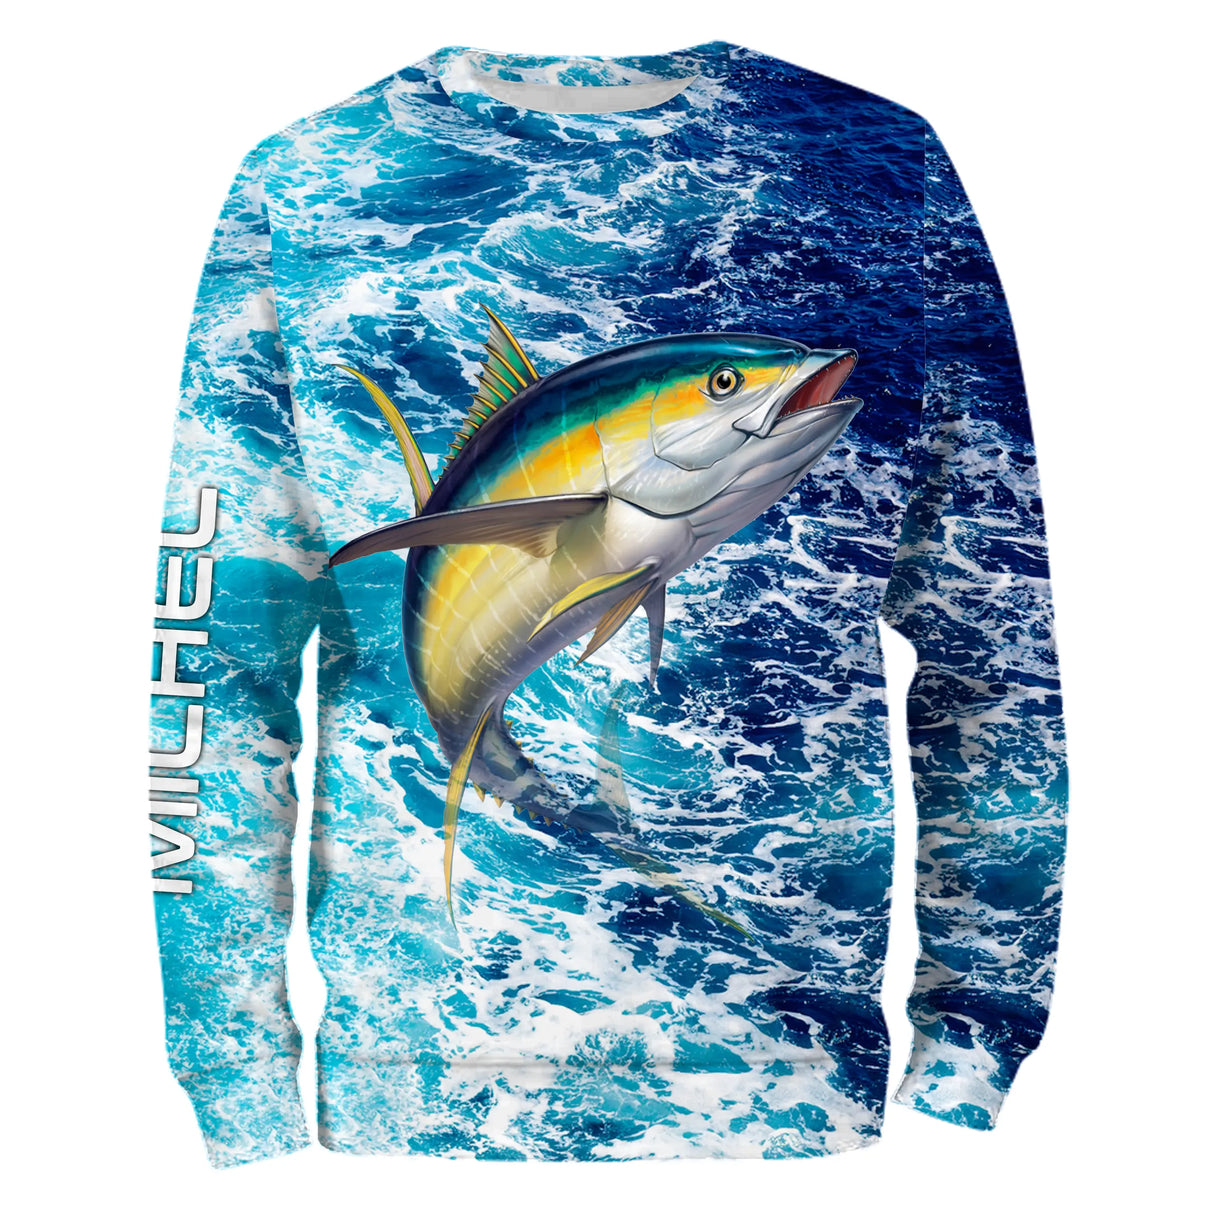 T-shirt personalizzata per la pesca al tonno, regalo originale per la pesca in mare, motivo oceano - CT11082227